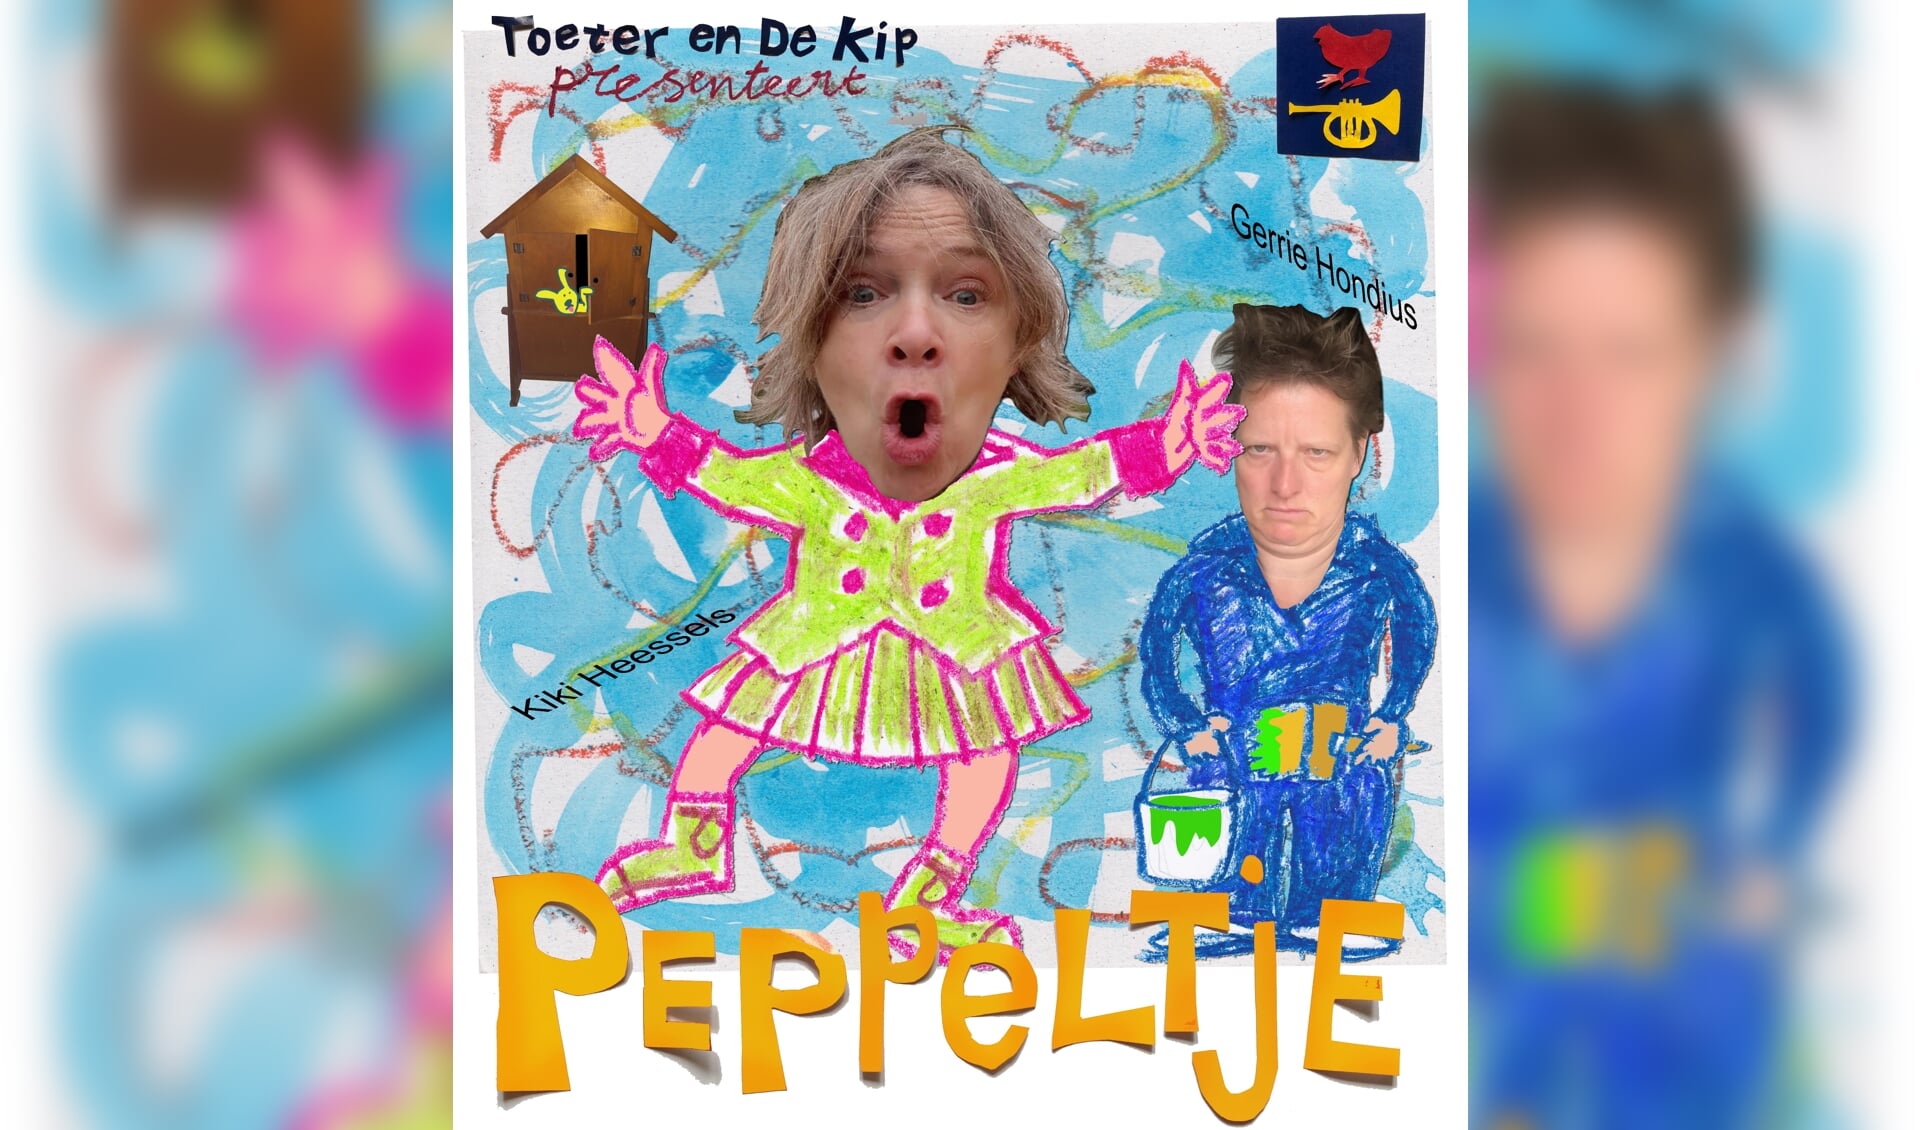 Theater Peppeltje Toeter en Kip. Foto: PR